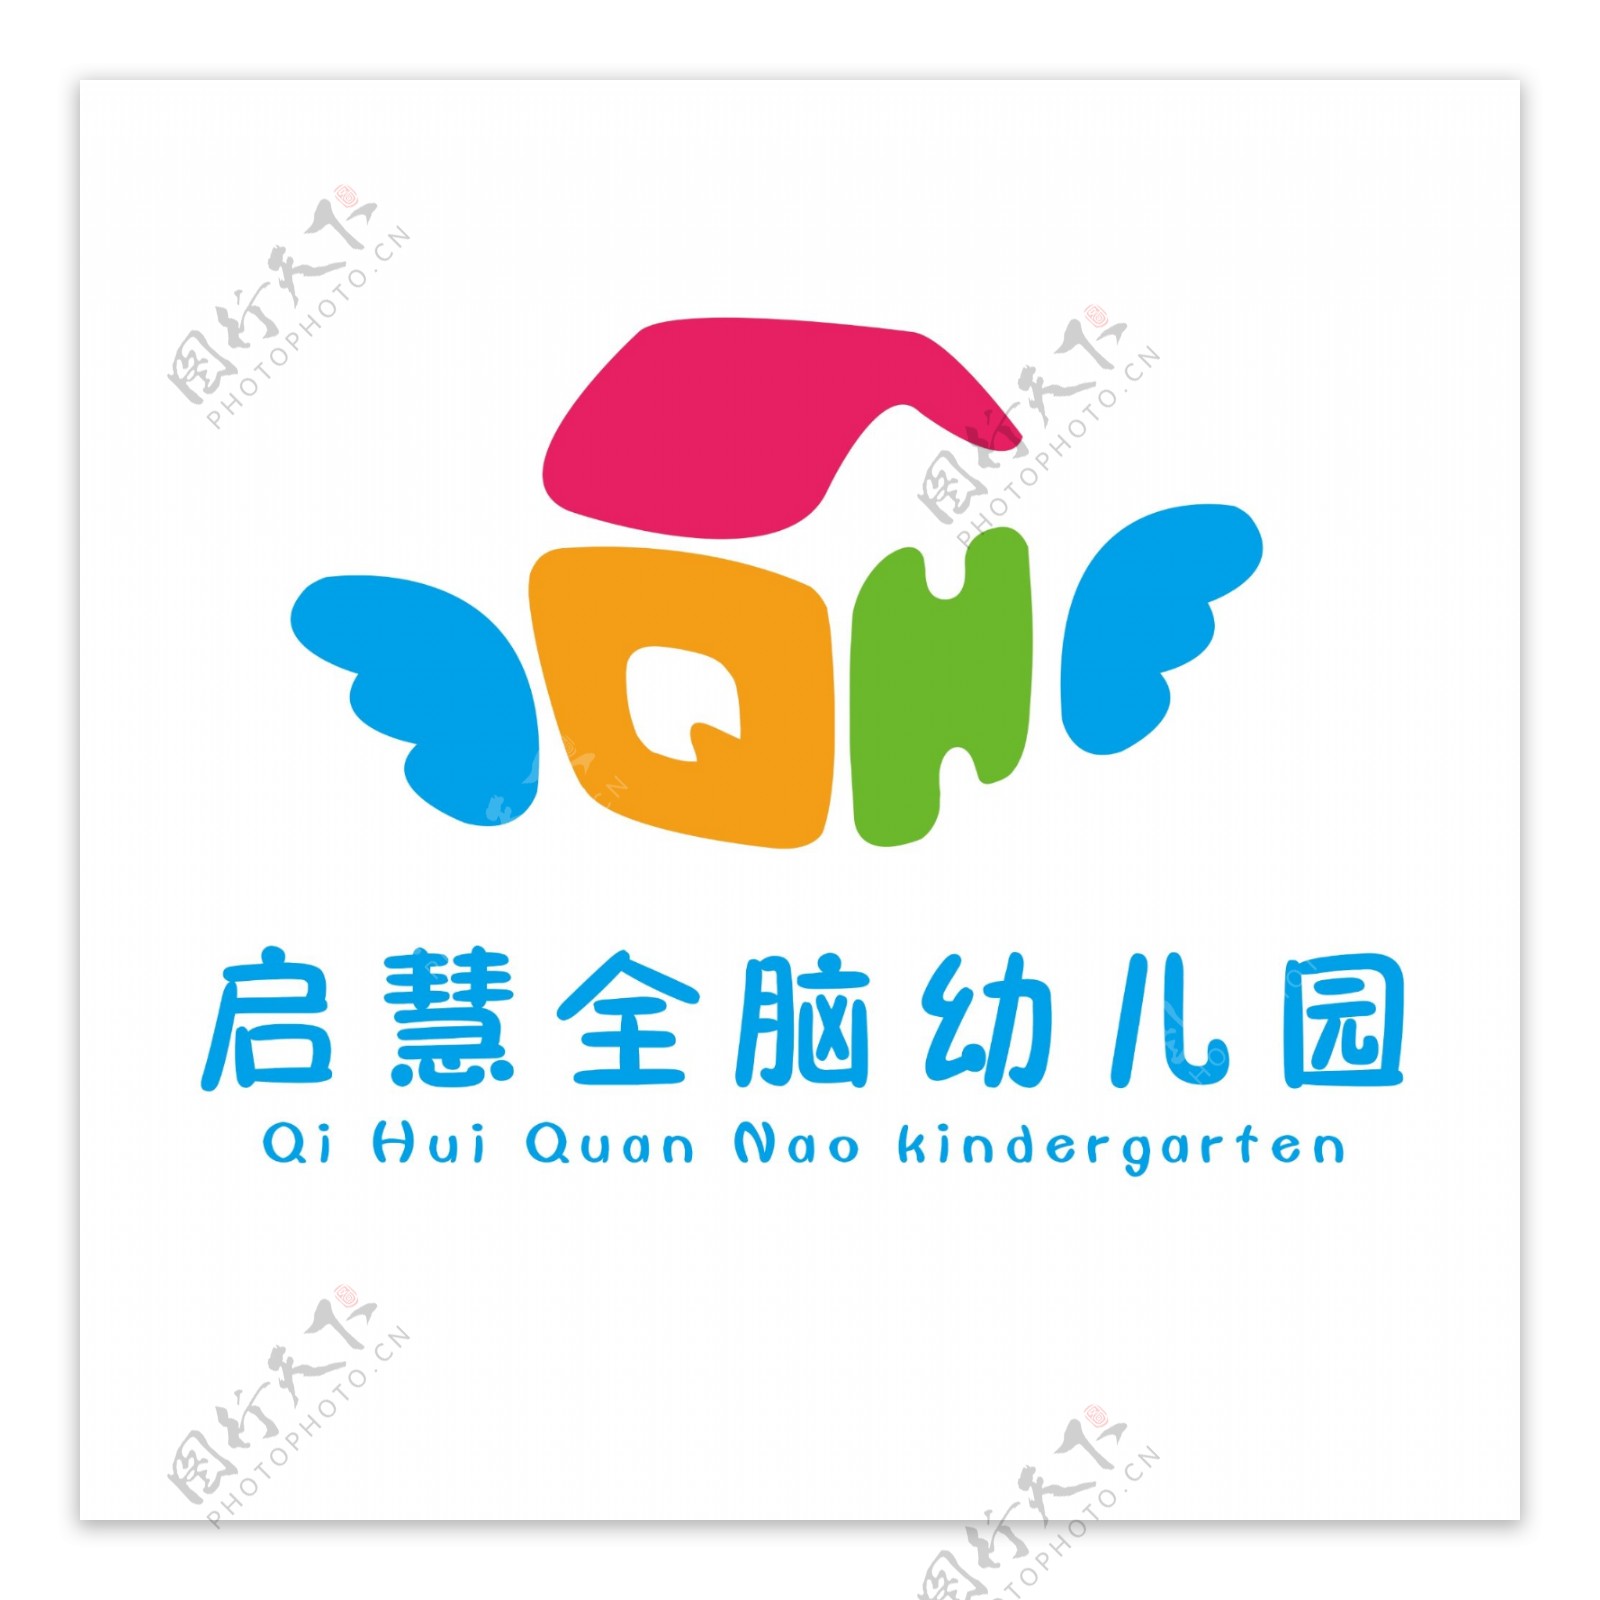 启慧幼儿园标志logo